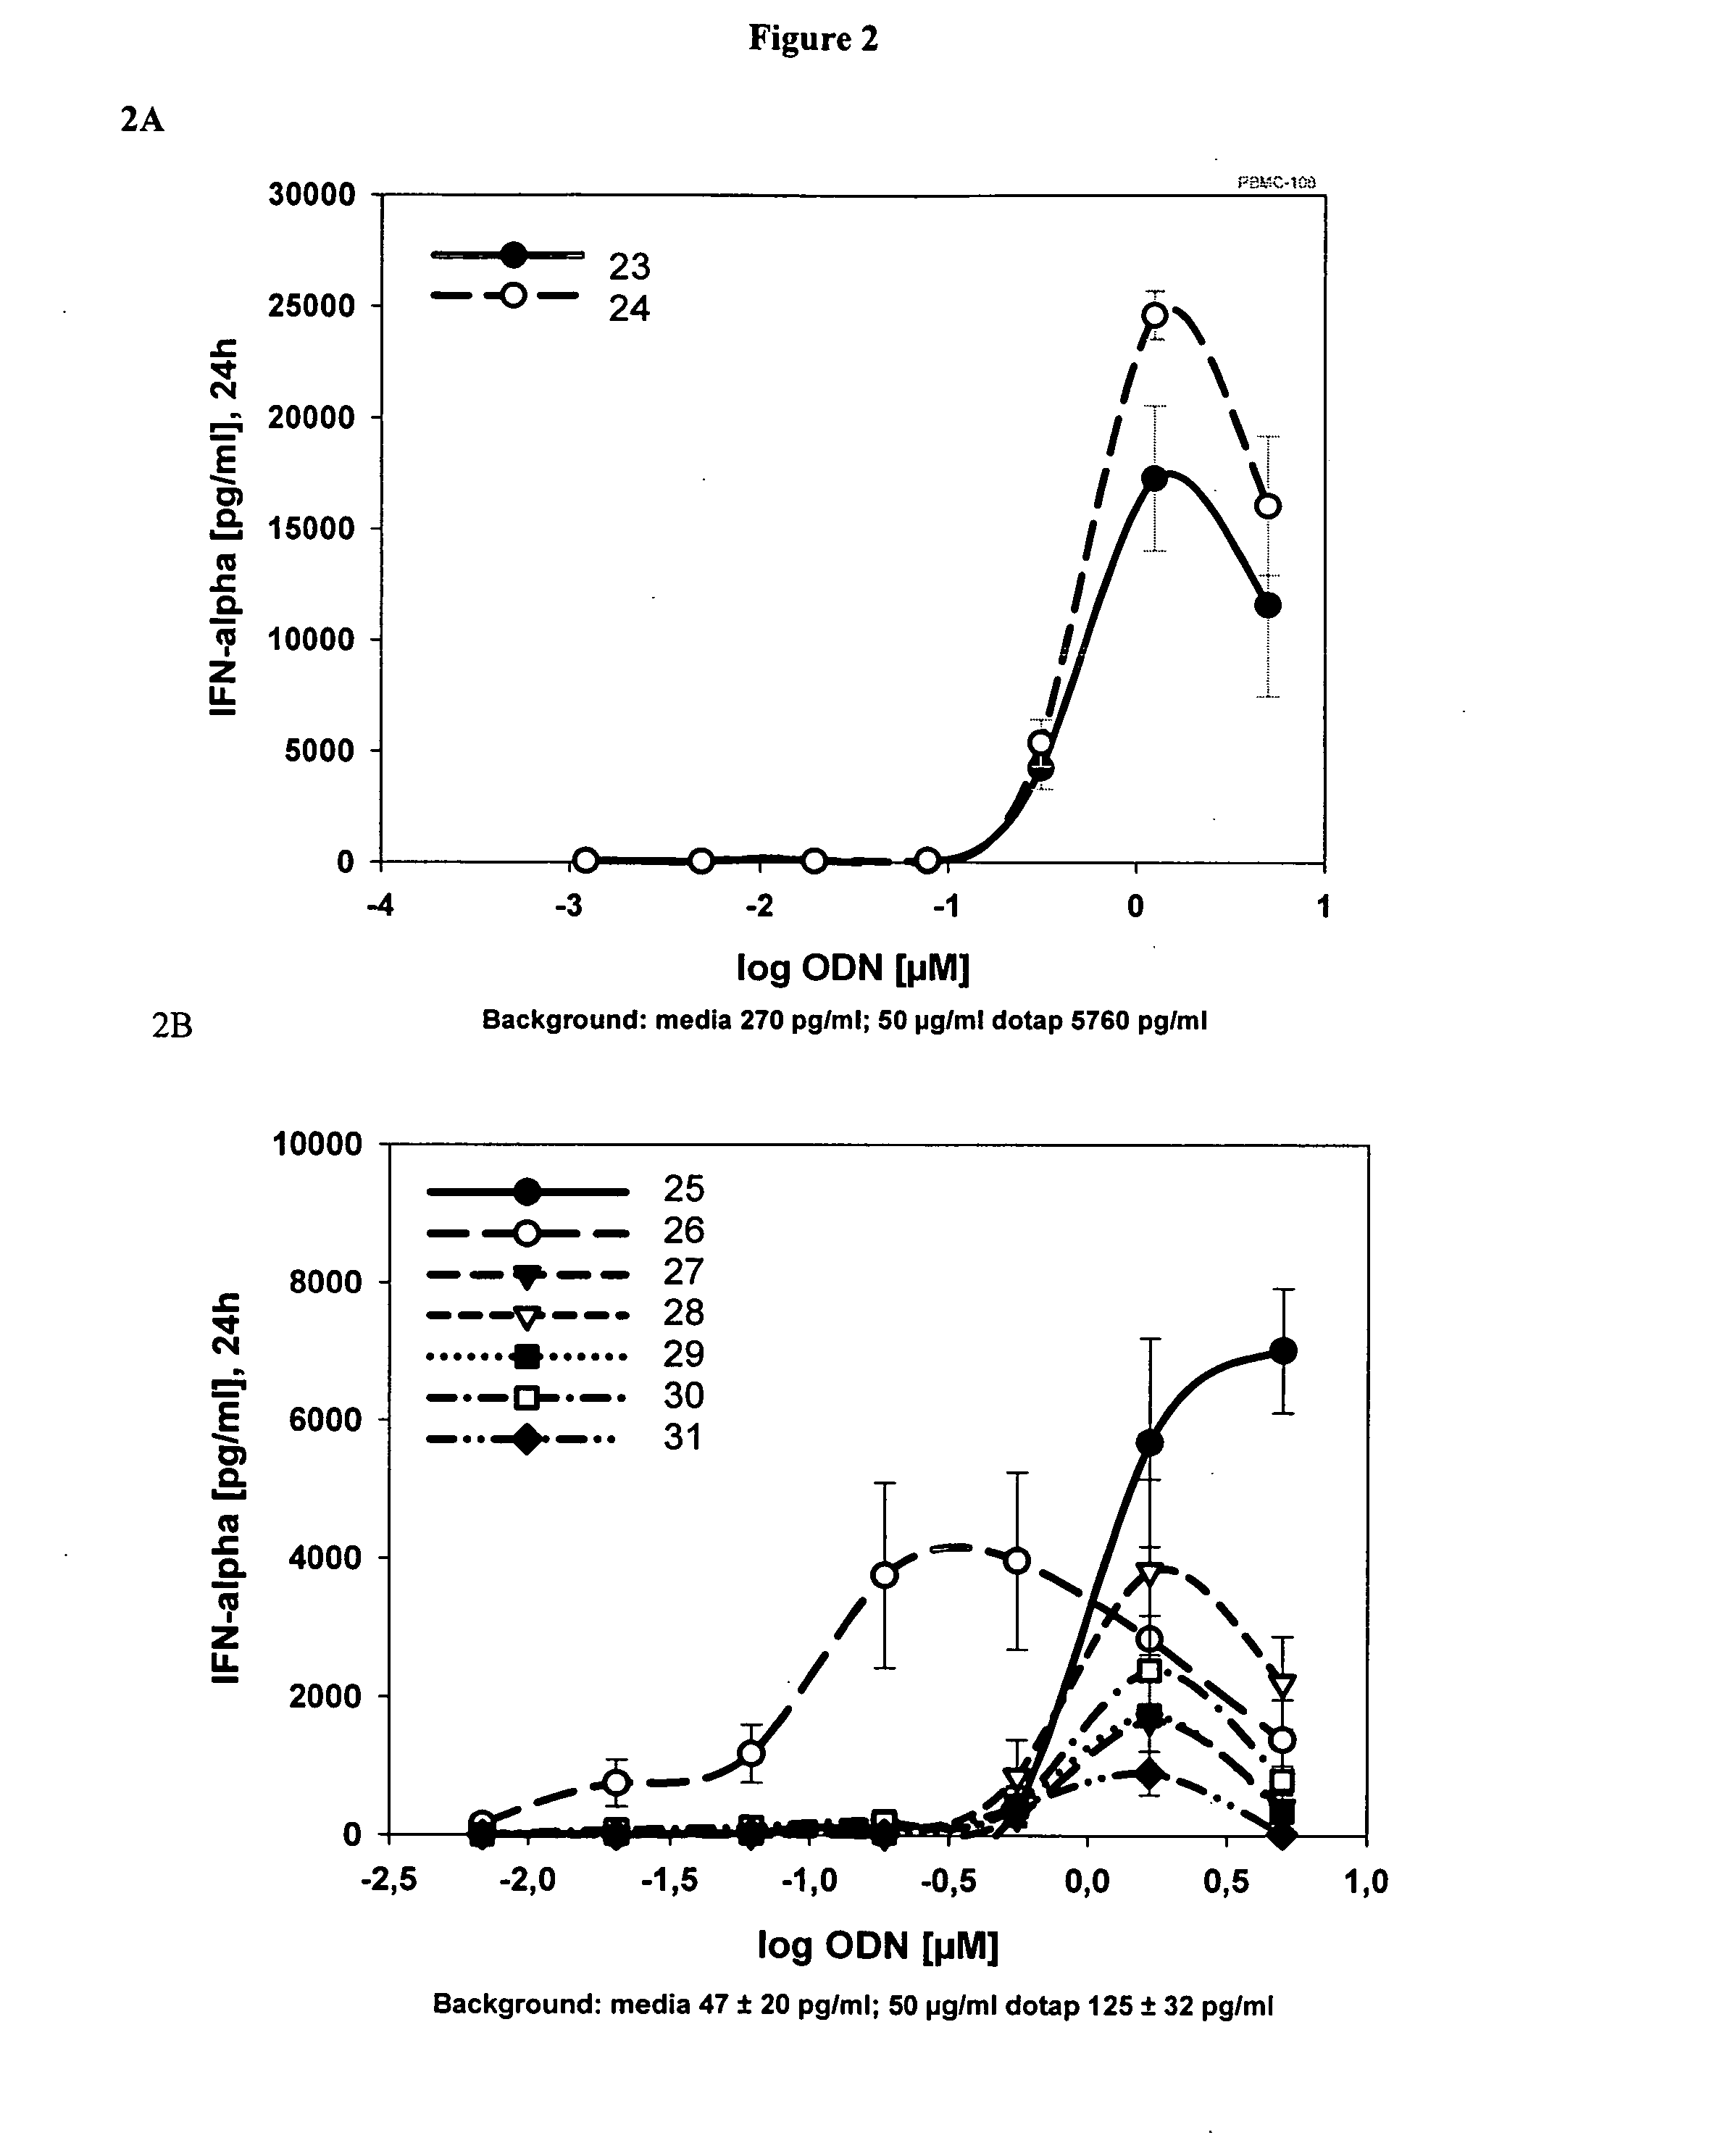 Immunostimulatory oligonucleotides